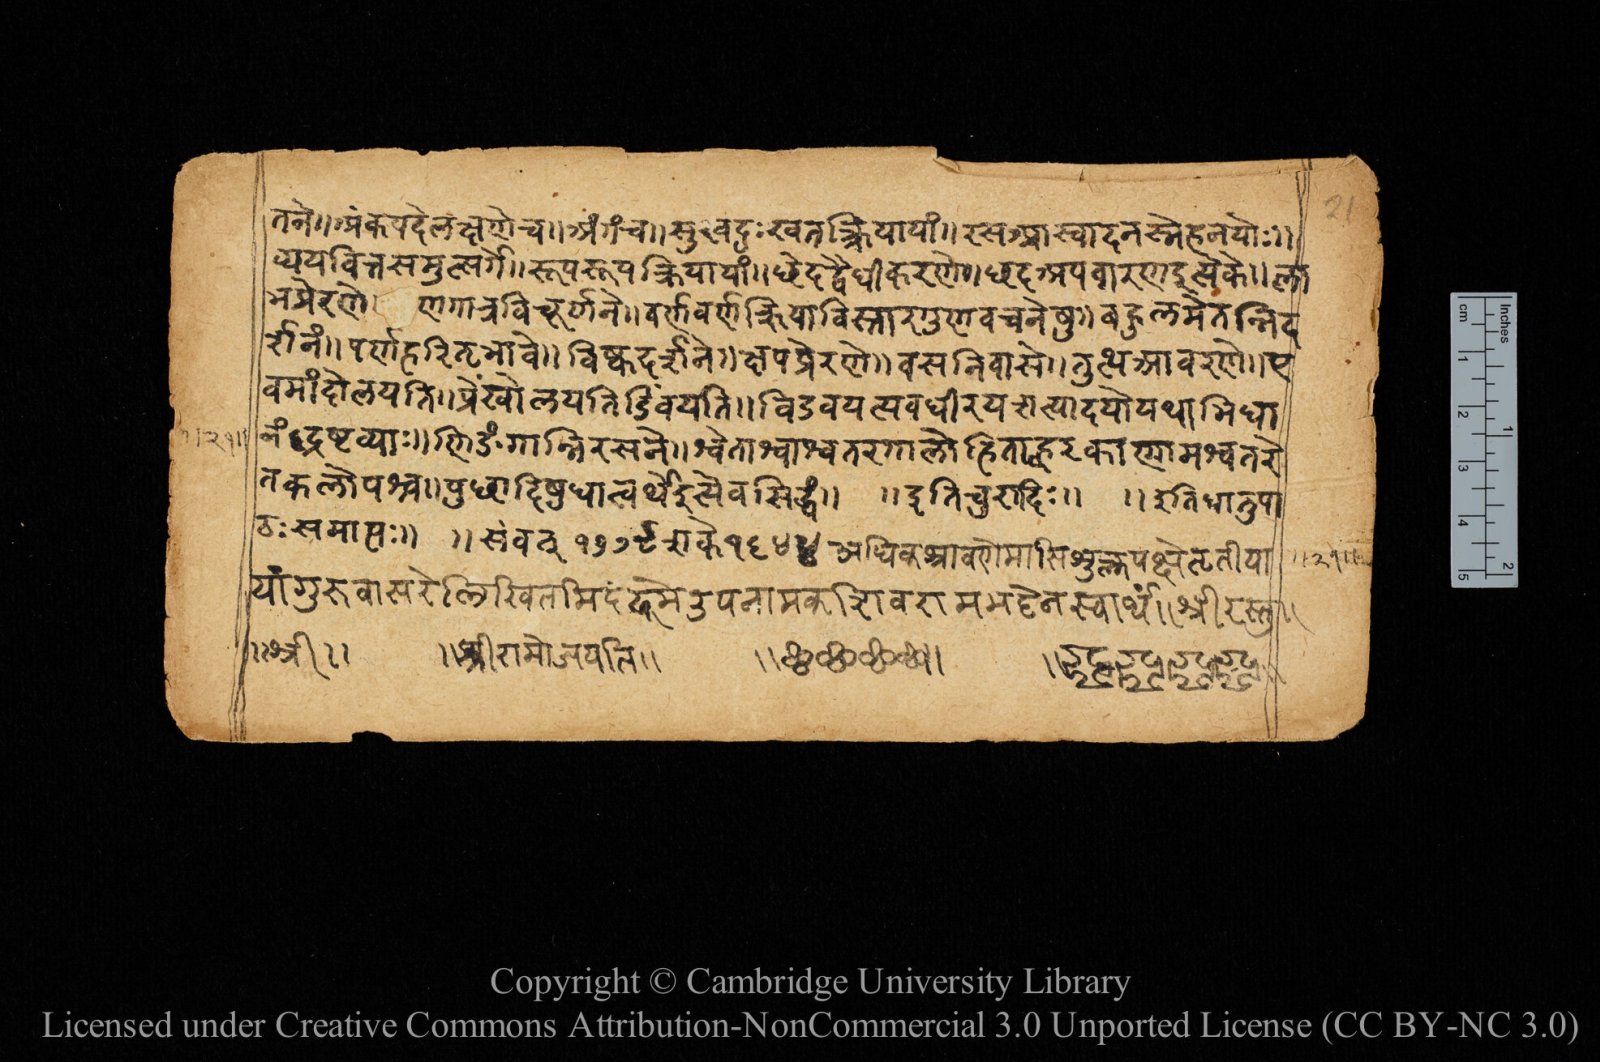 Masalah terpecahkan: Siswa memecahkan masalah bahasa Sansekerta dari abad ke-5